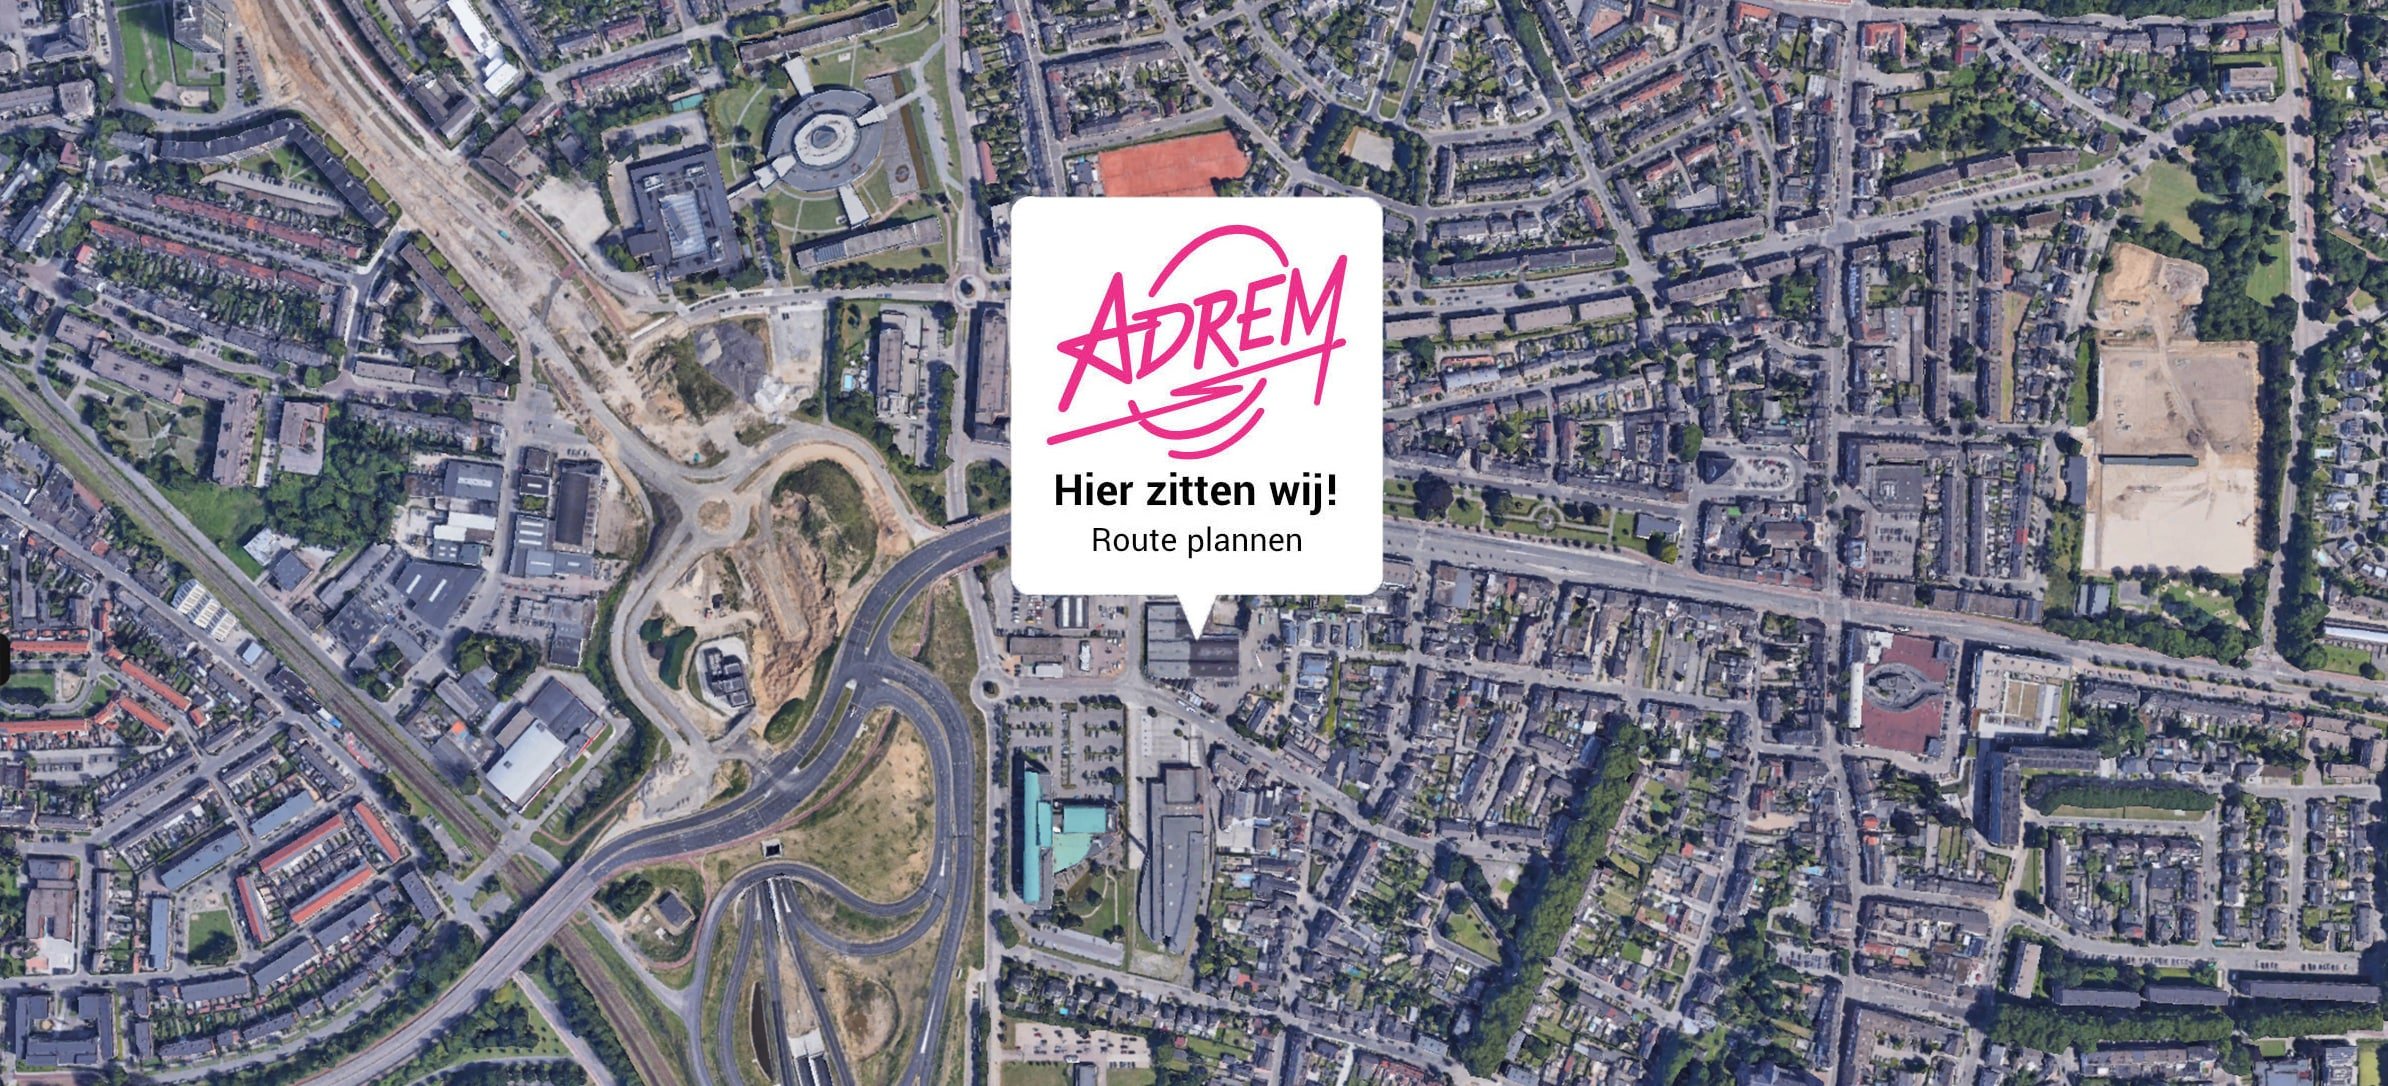 Adrem-autoverhuur-contact-locatie-Maastricht-min